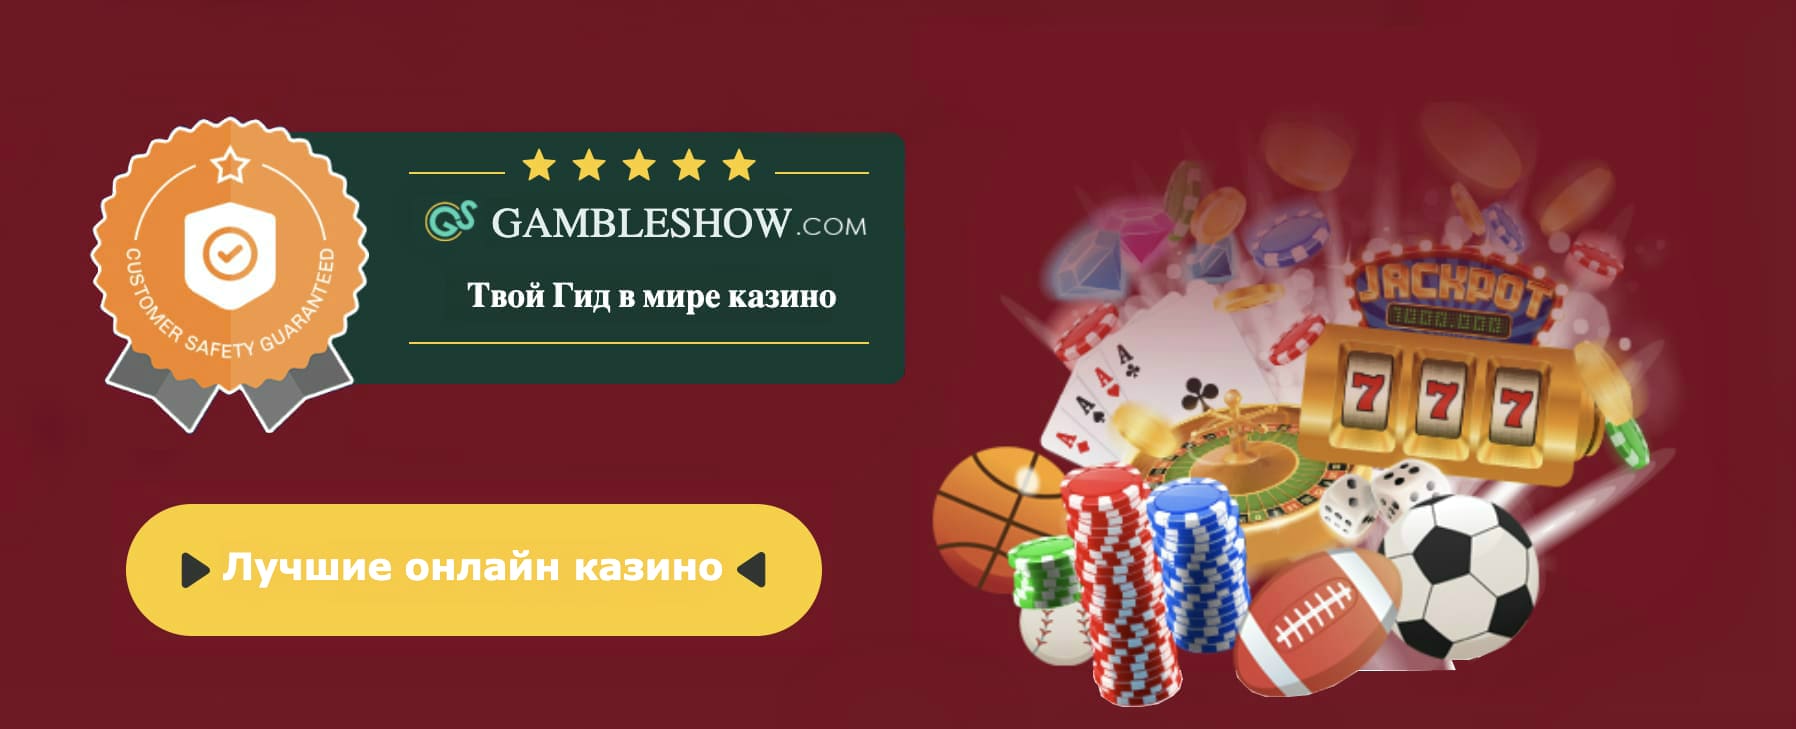 Casino.com australia